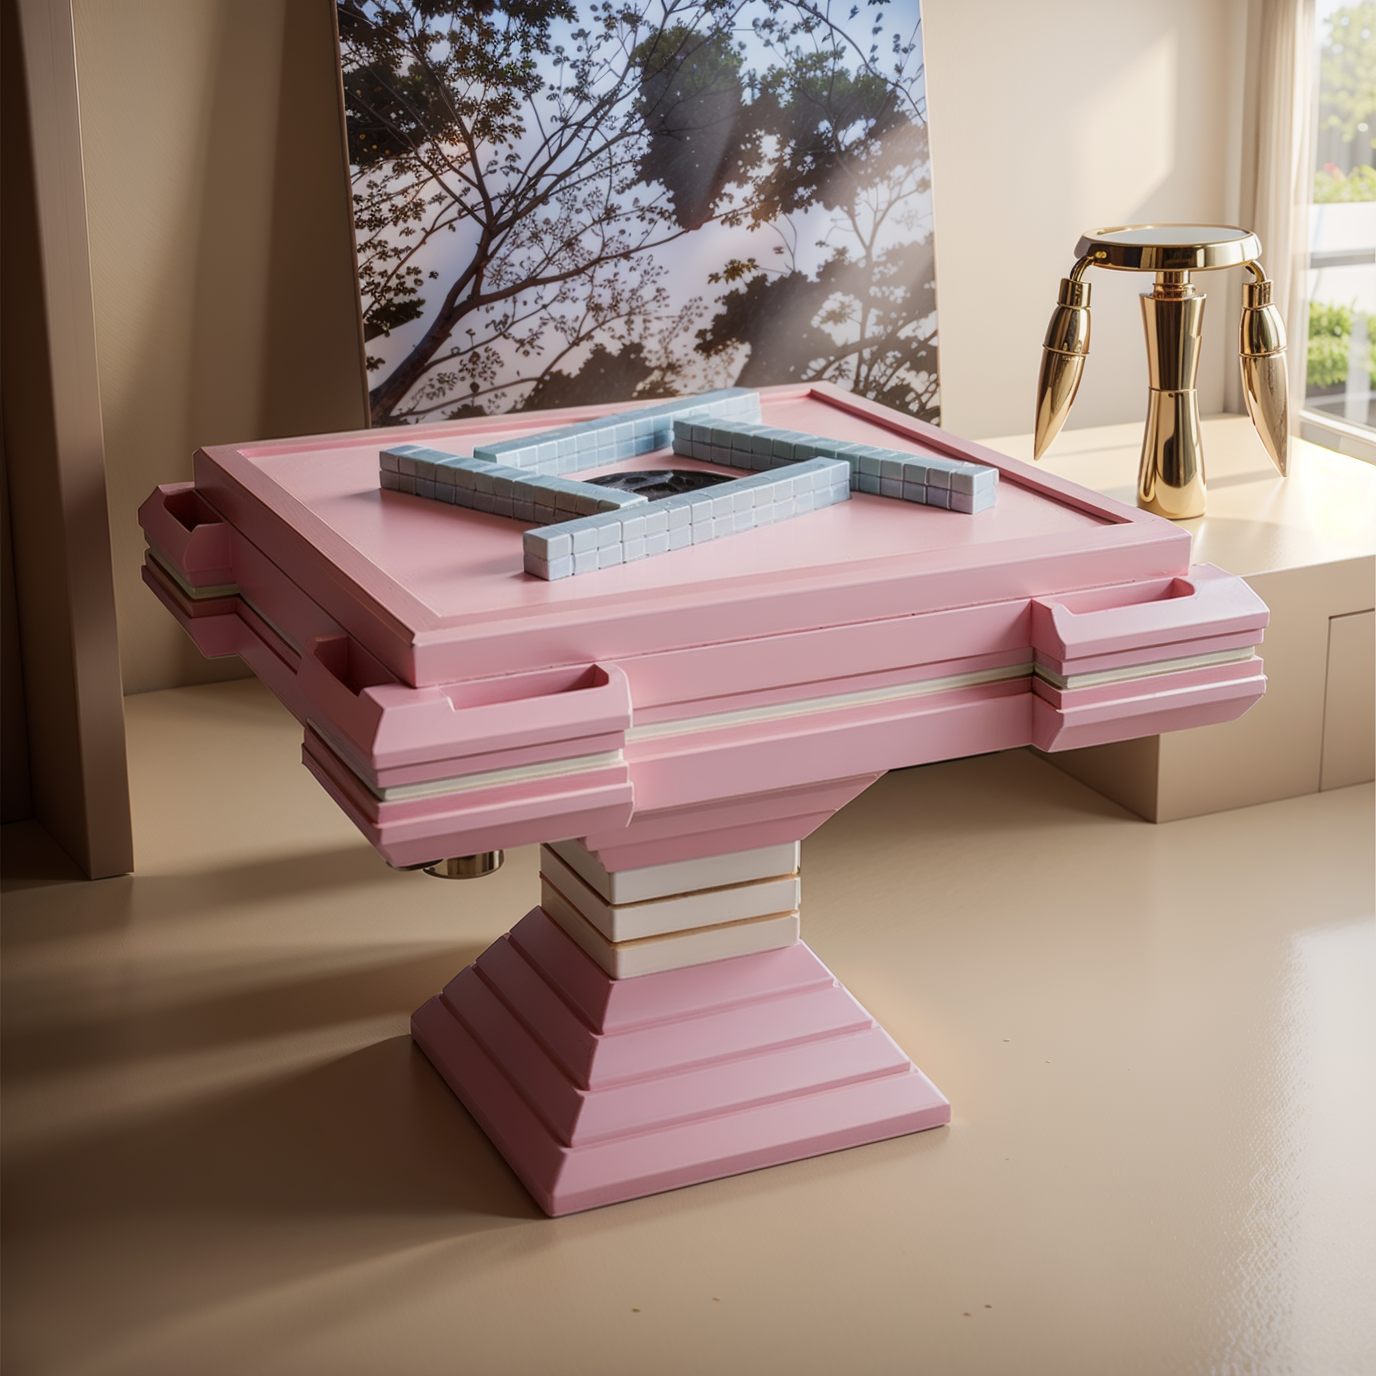 vismara全自動電動麻將機高級感設計師款象牙白過山車粉色麻將桌